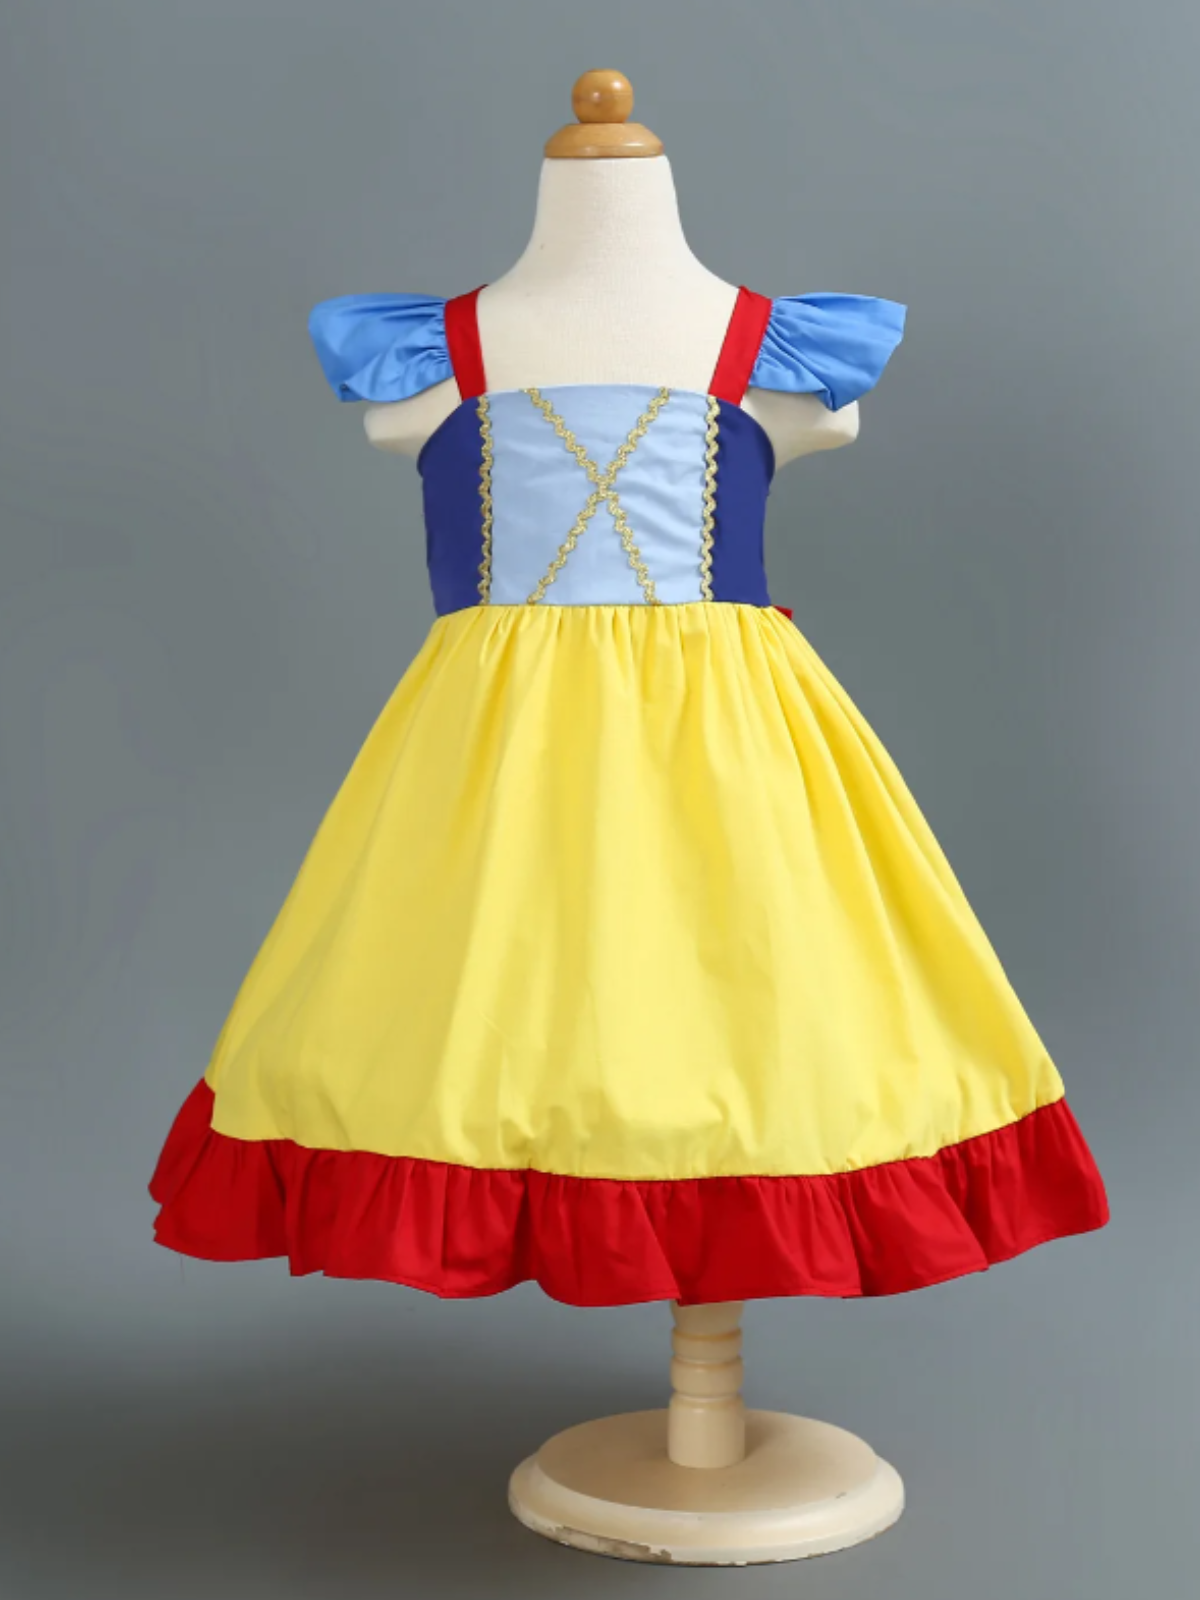 Mia Belle Girls Flutter Sleeve Princess Dress | Princess Dress Up